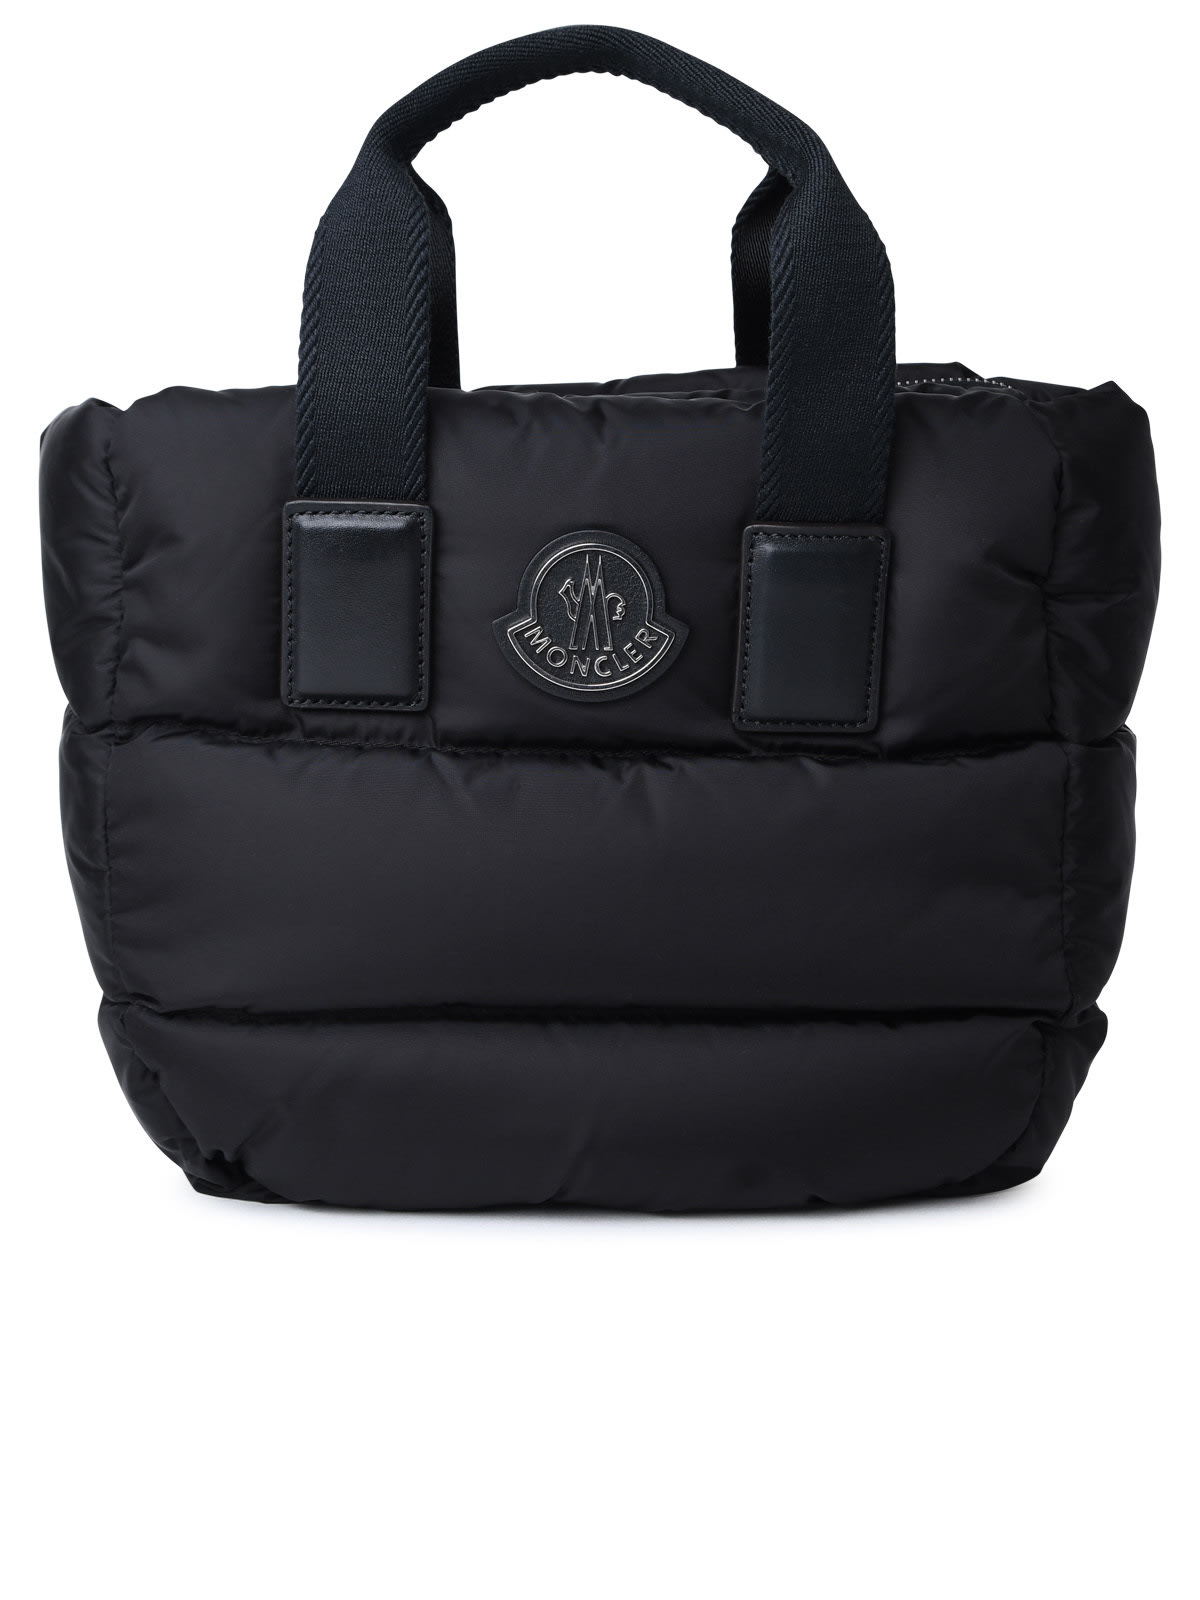 caradoc Mini Bag In Black Nylon